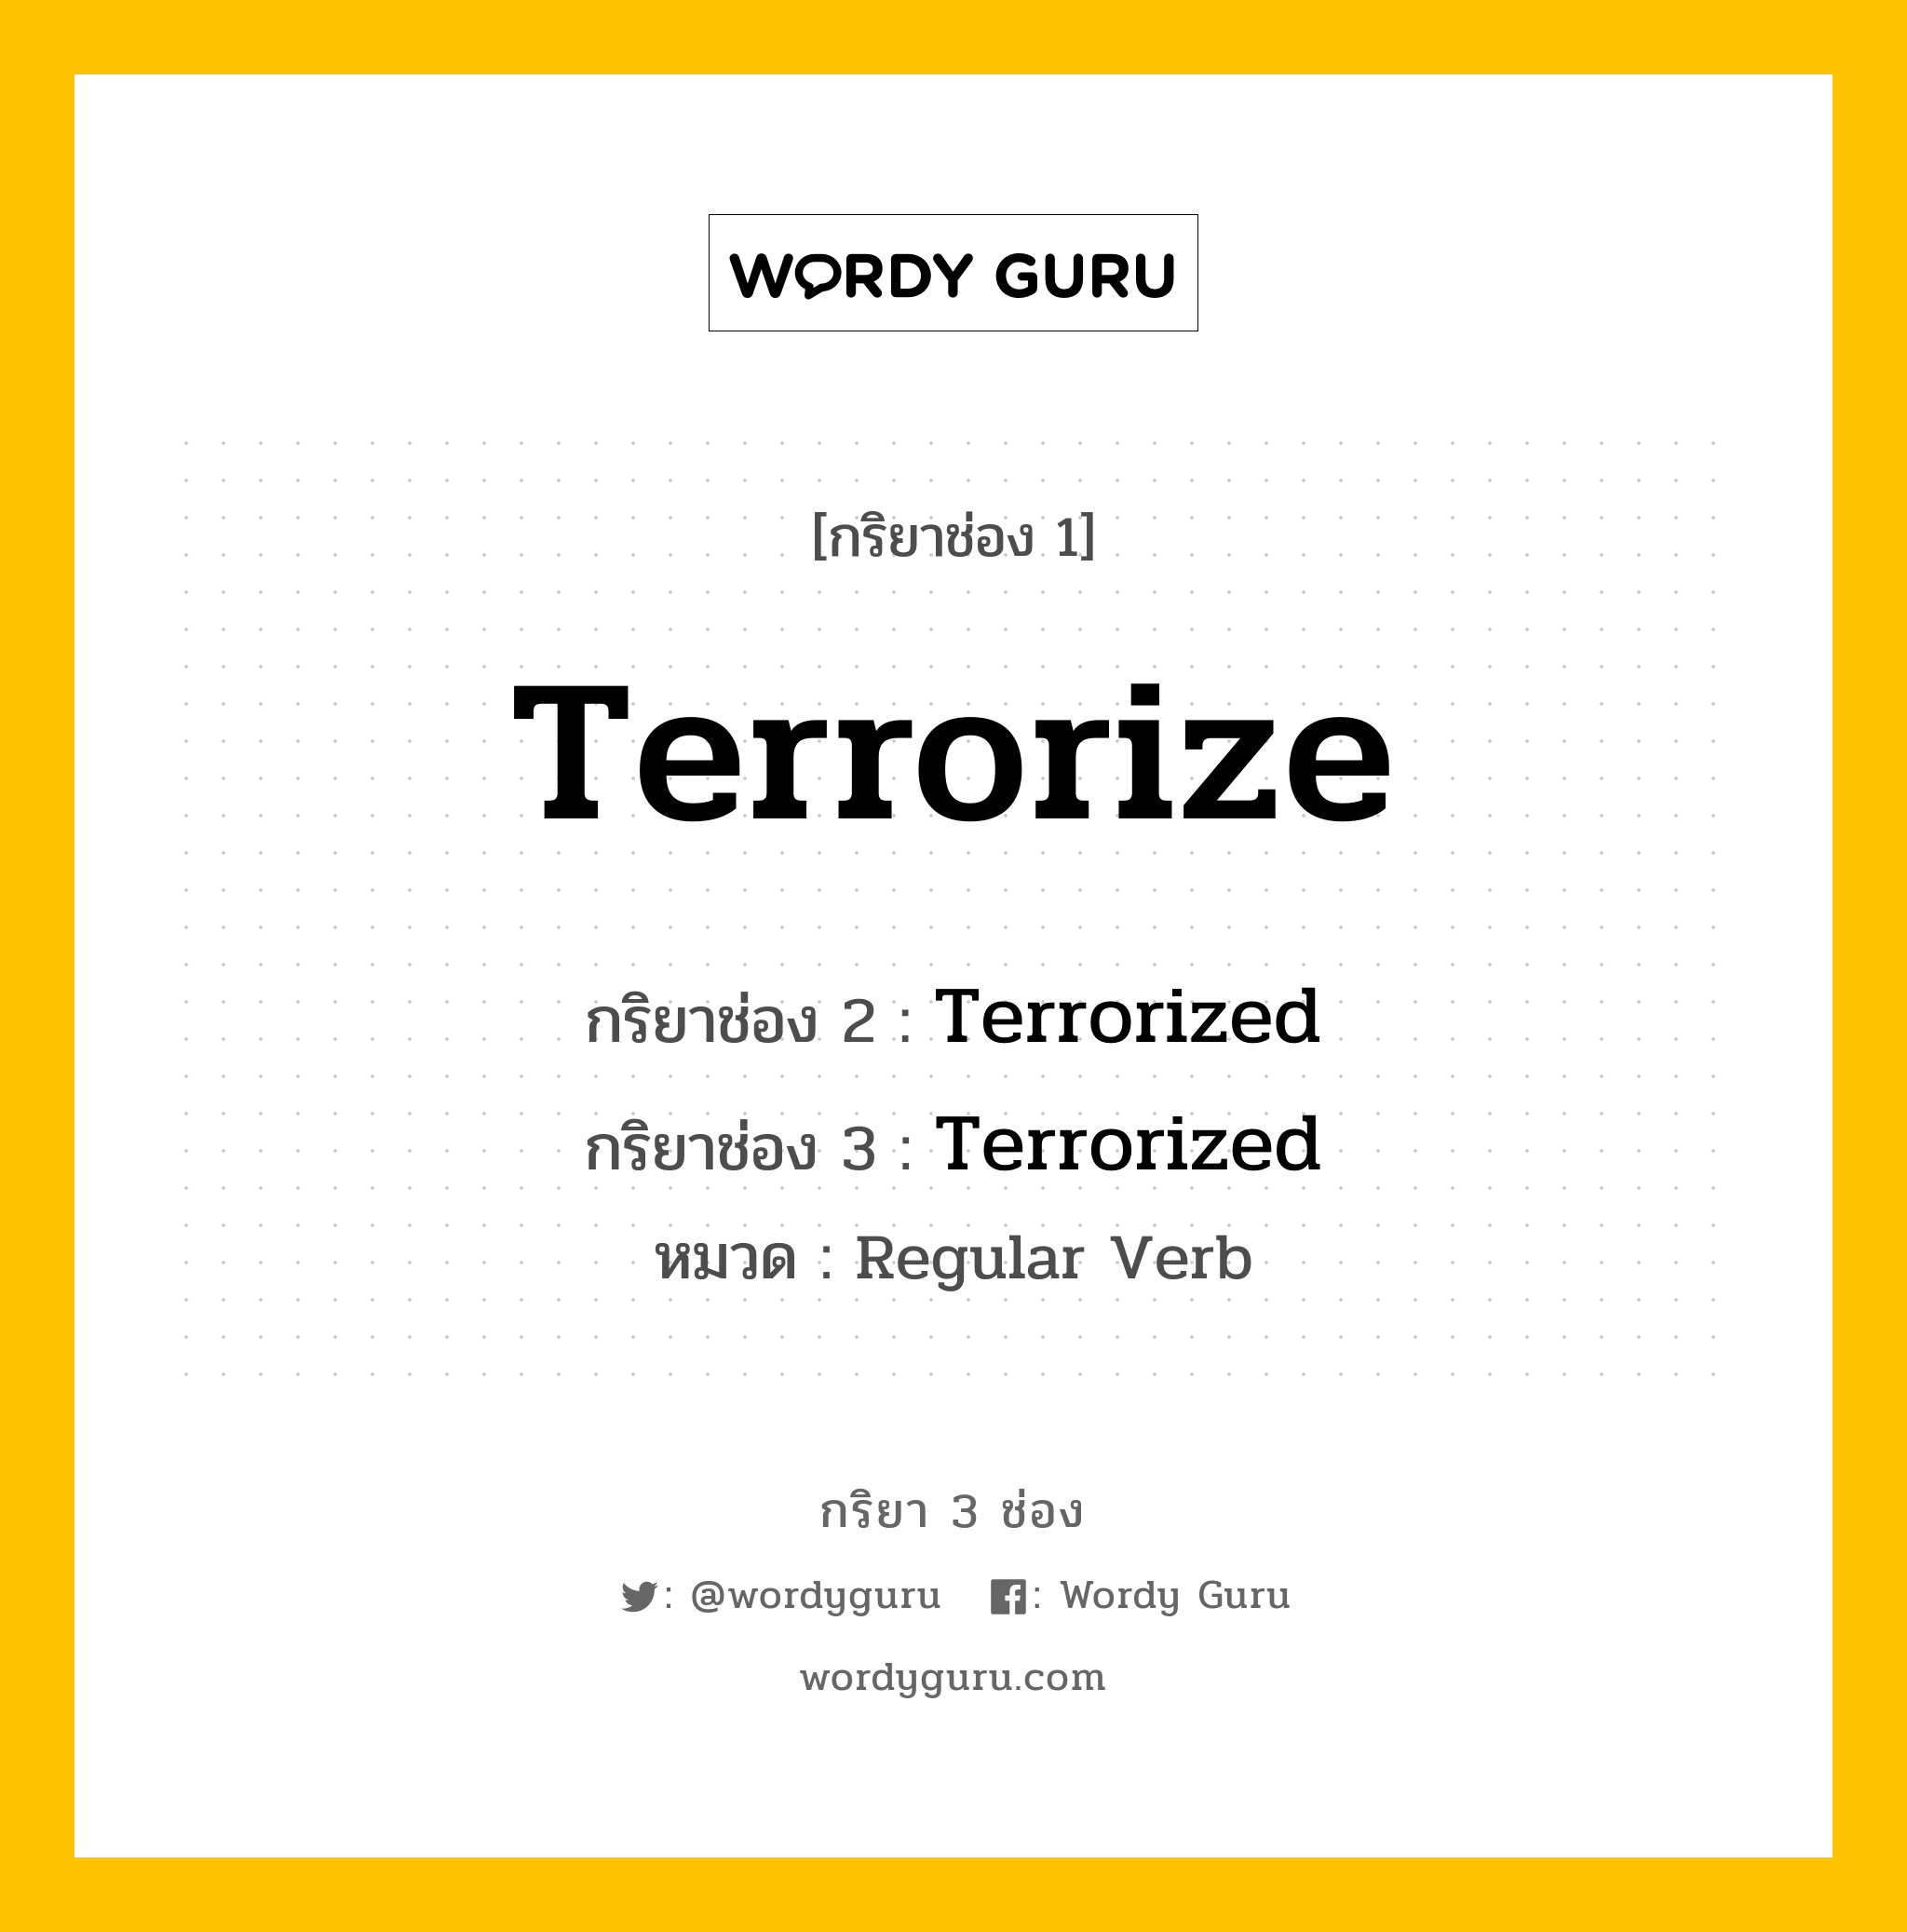 กริยา 3 ช่อง: Terrorize ช่อง 2 Terrorize ช่อง 3 คืออะไร, กริยาช่อง 1 Terrorize กริยาช่อง 2 Terrorized กริยาช่อง 3 Terrorized หมวด Regular Verb หมวด Regular Verb